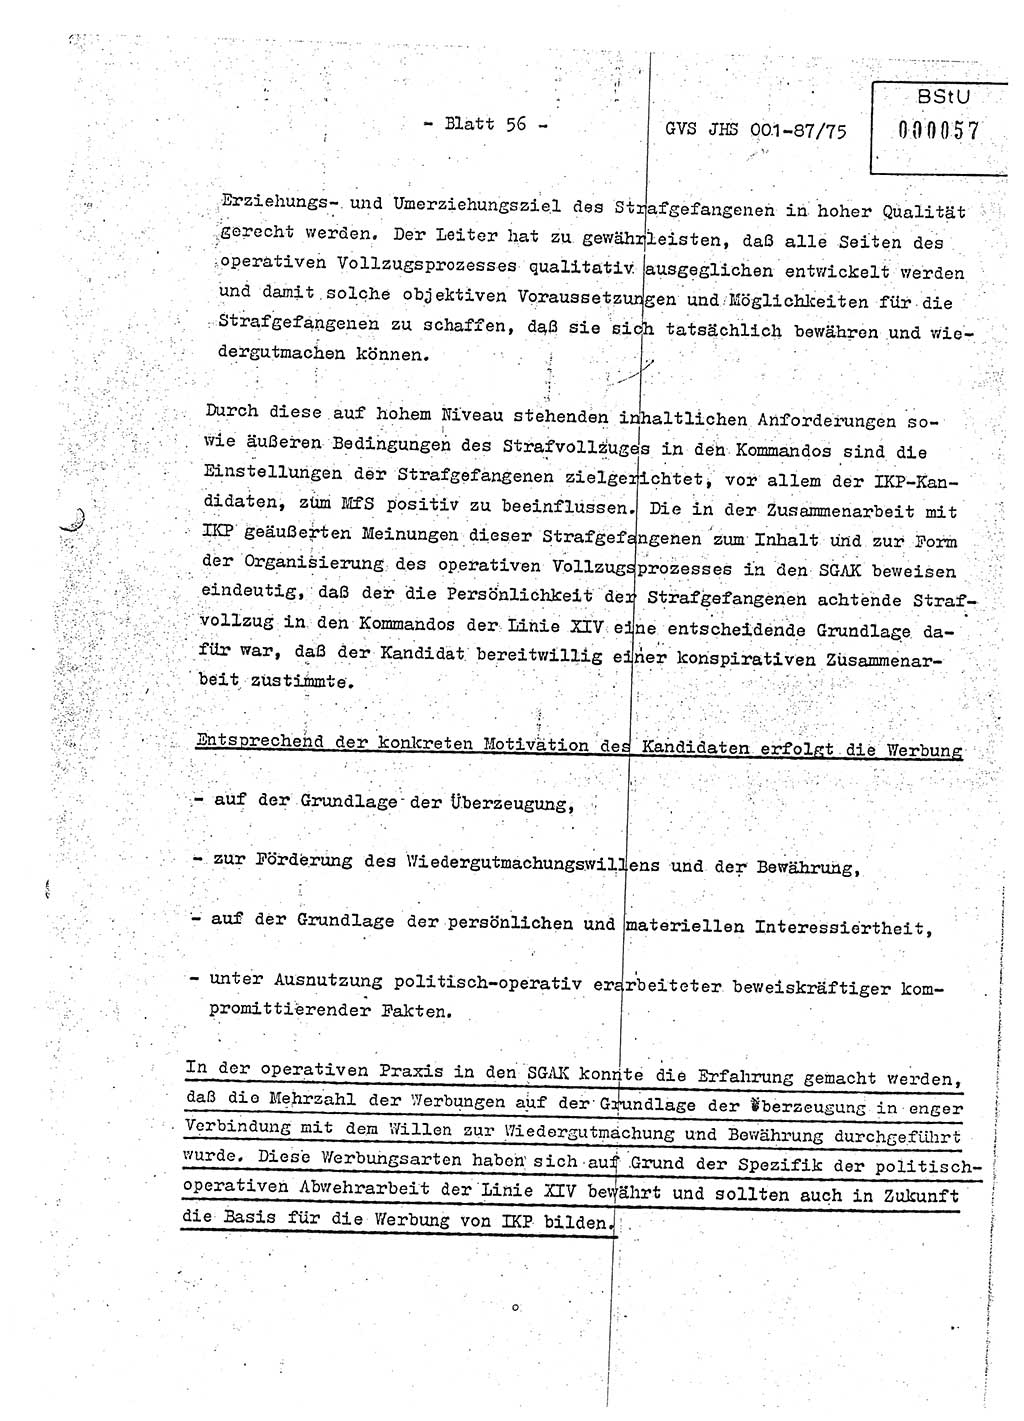 Diplomarbeit Hauptmann Volkmar Heinz (Abt. ⅩⅣ), Oberleutnant Lothar Rüdiger (BV Lpz. Abt. Ⅺ), Ministerium für Staatssicherheit (MfS) [Deutsche Demokratische Republik (DDR)], Juristische Hochschule (JHS), Geheime Verschlußsache (GVS) o001-87/75, Potsdam 1975, Seite 56 (Dipl.-Arb. MfS DDR JHS GVS o001-87/75 1975, S. 56)